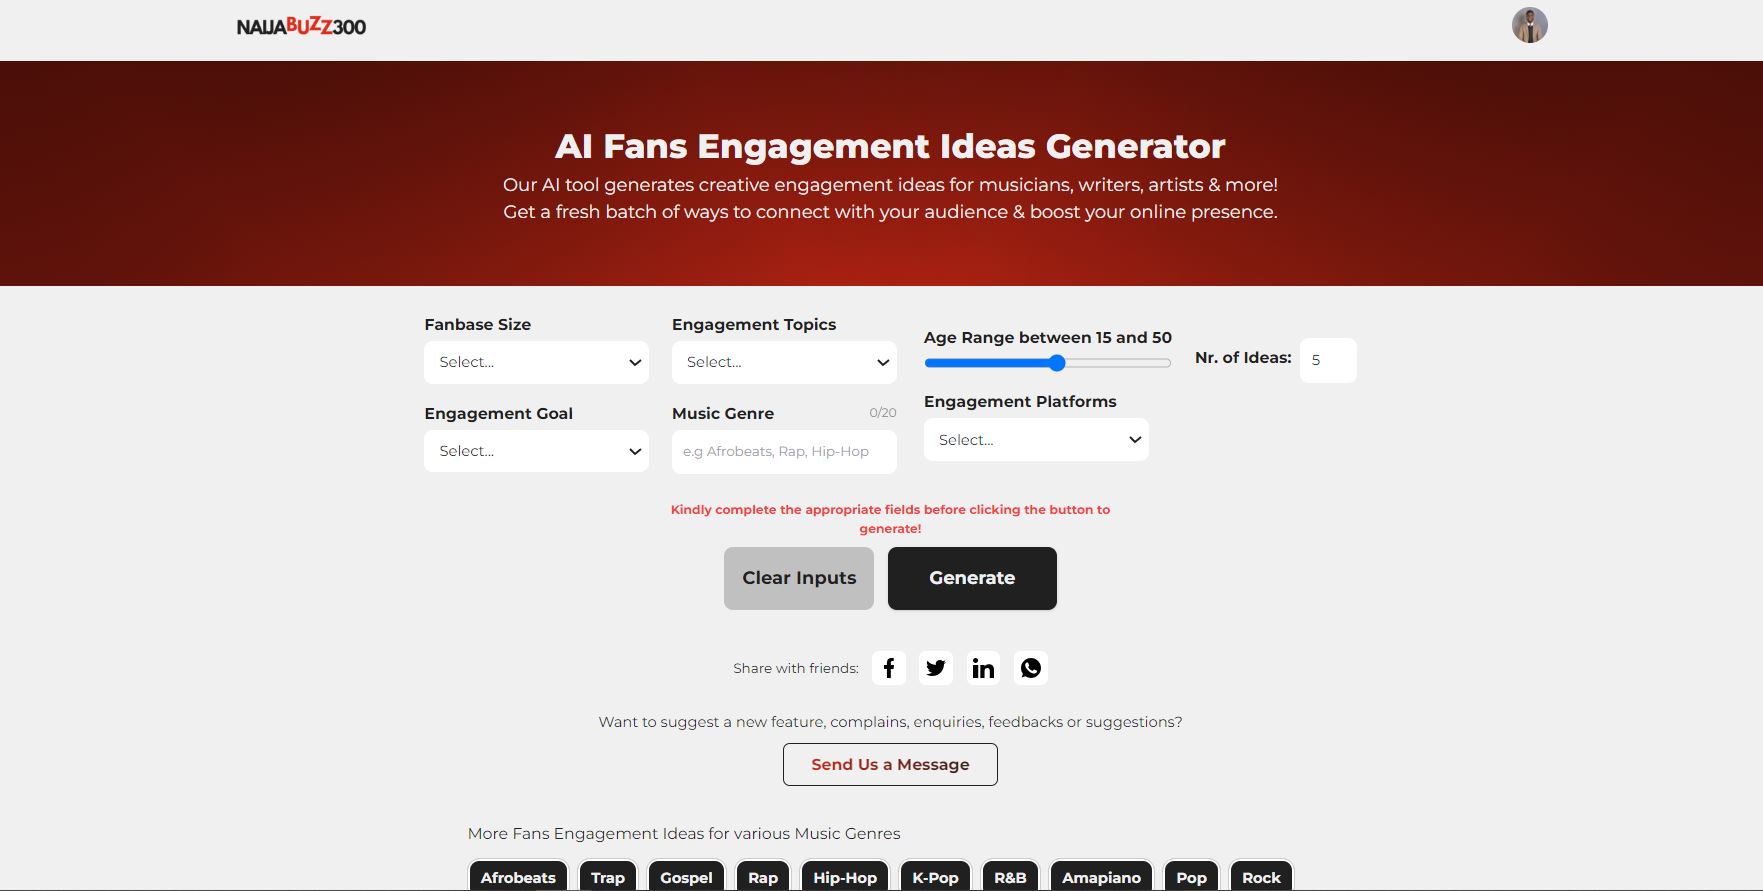 NaijaBuzz300 fans engagement ideas generator